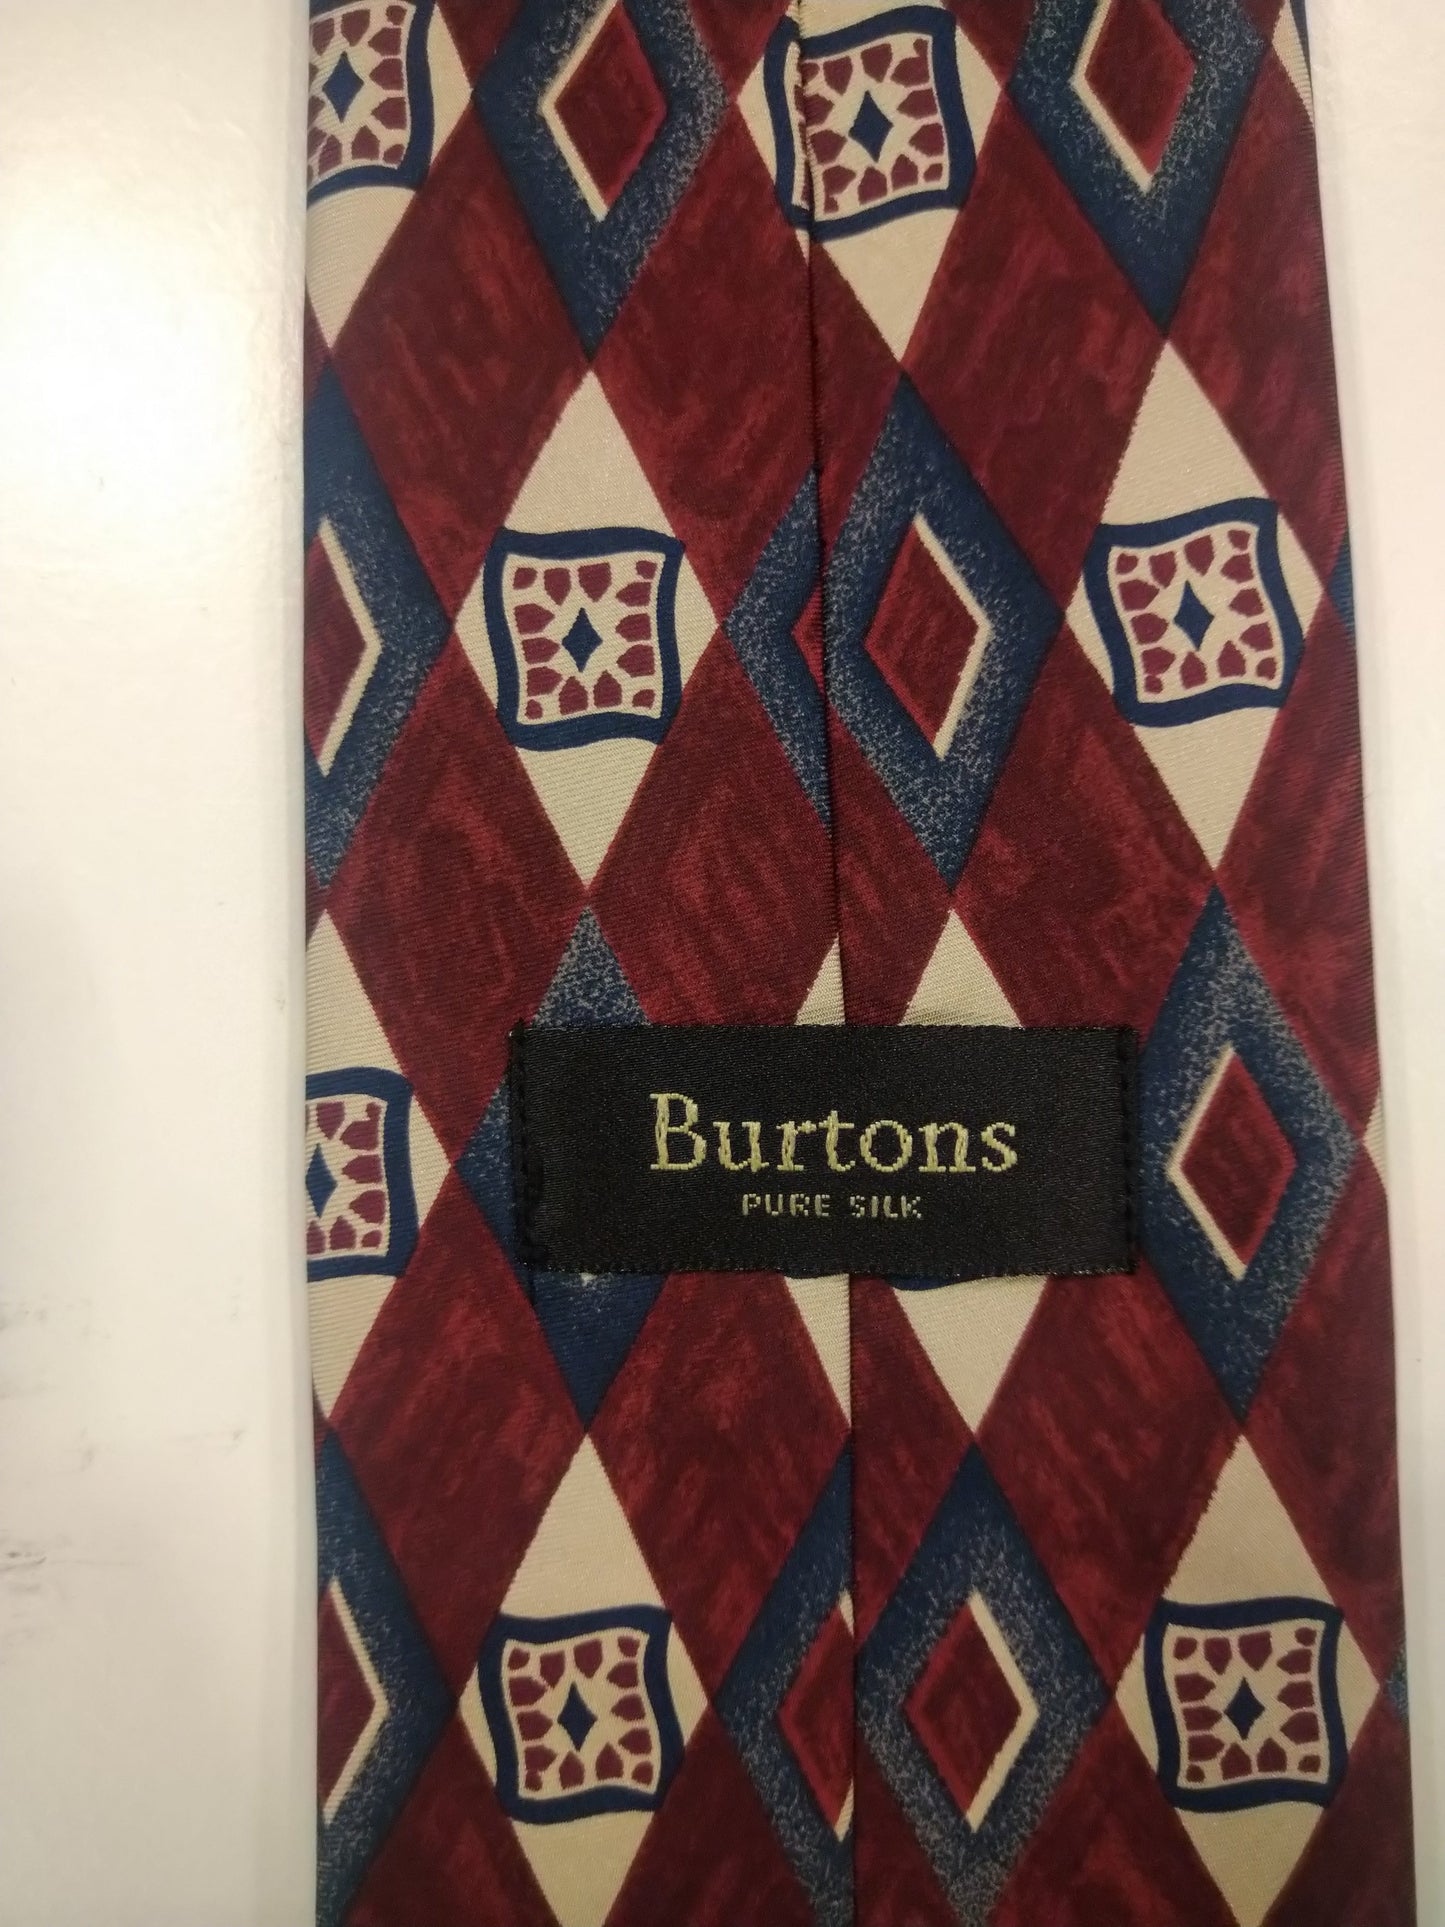 La cravate en soie de Burton. Motif beige bleu rouge.